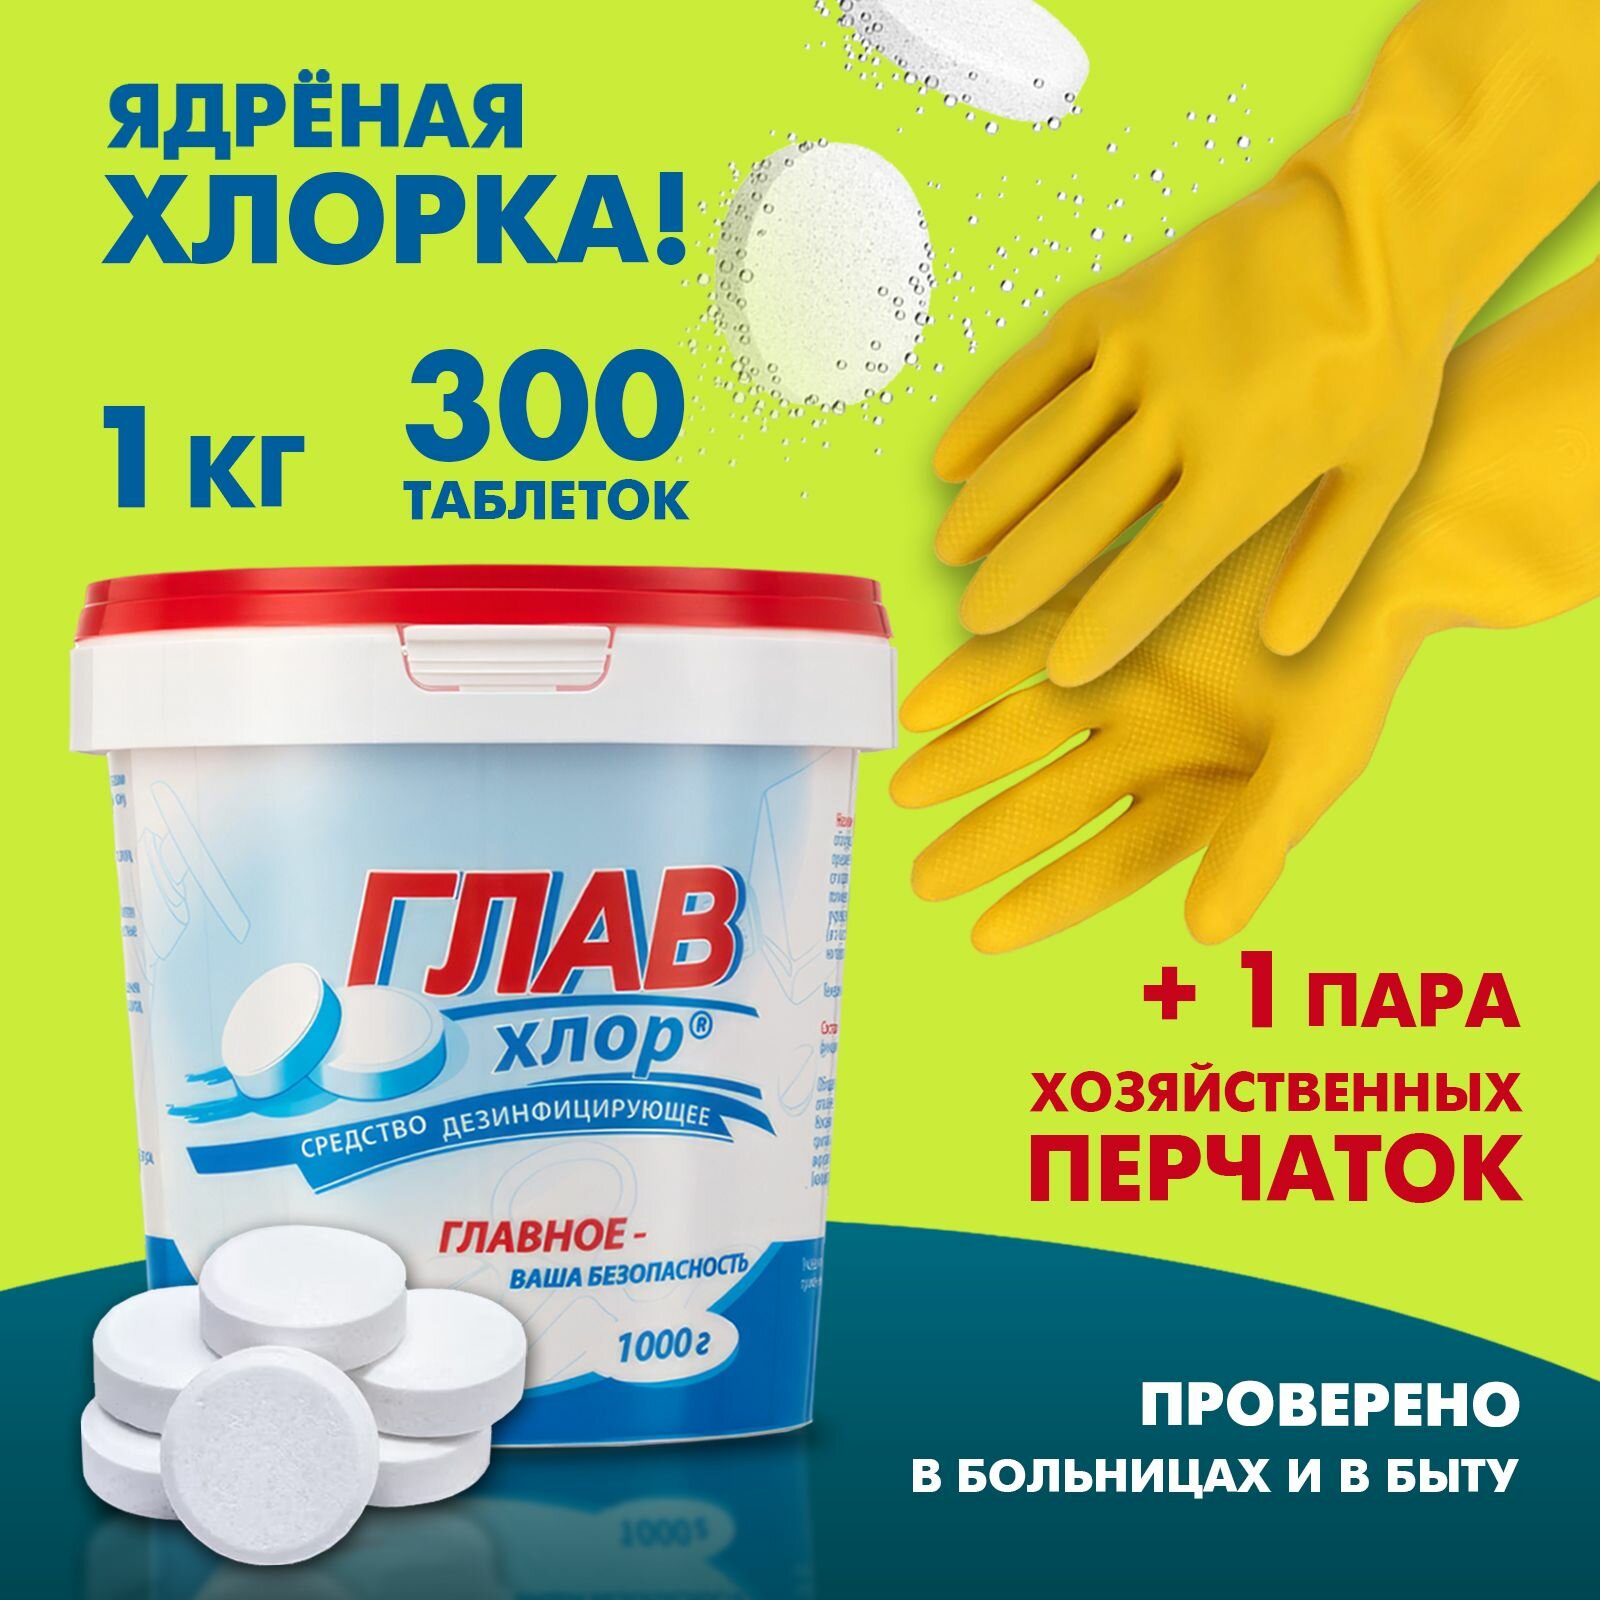 Набор хлорные таблетки для дезинфекции 1 кг главхлор + хозяйственные перчатки